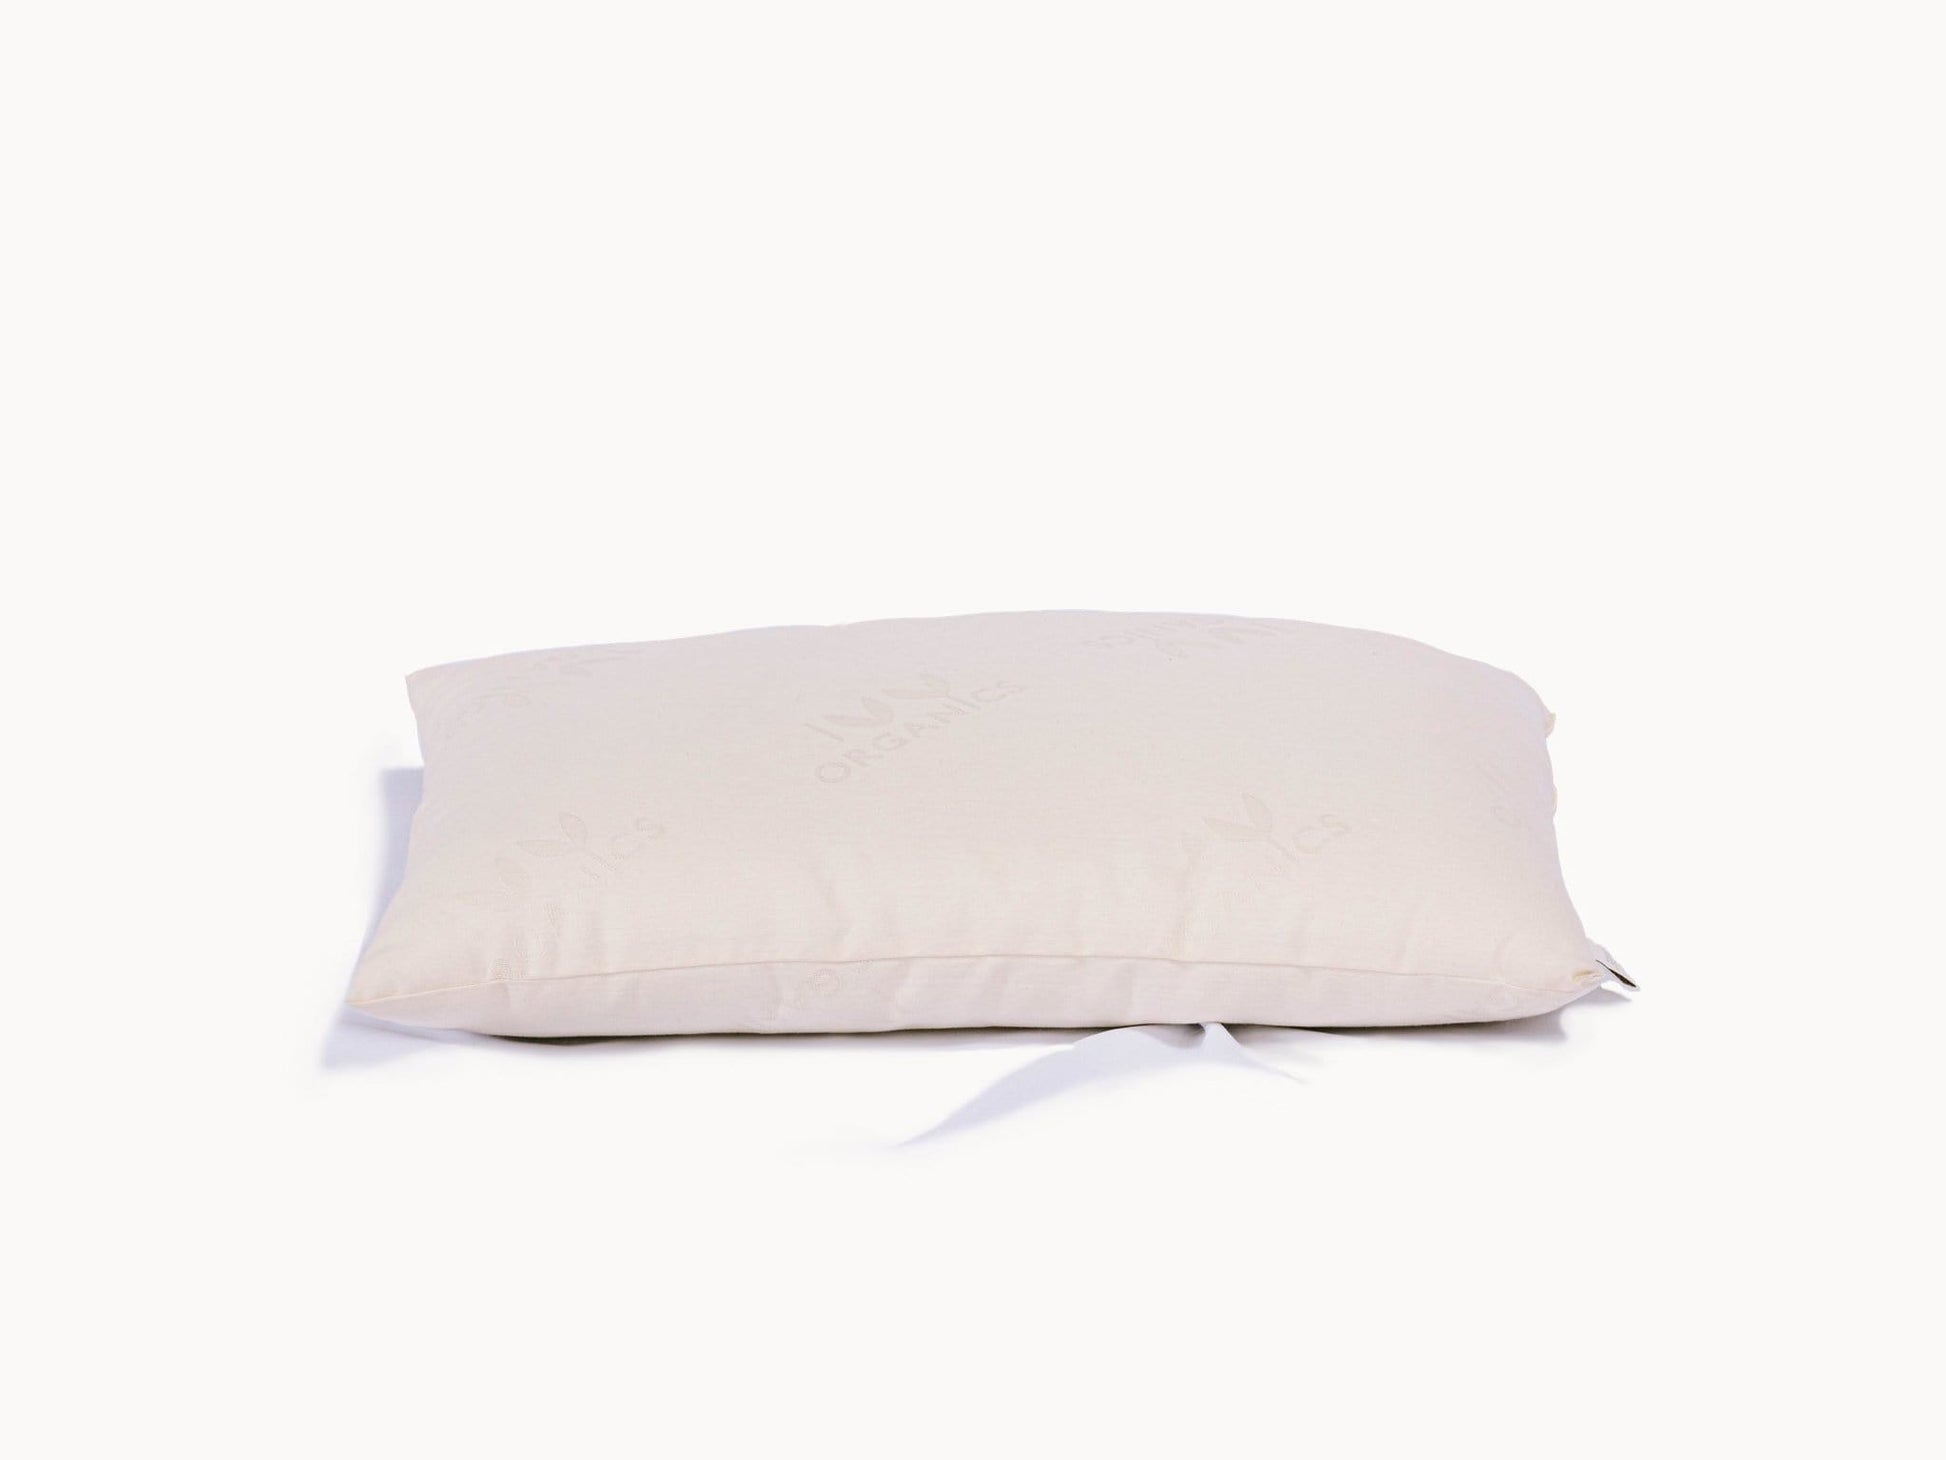 Certified Organic Wool Pillow by Ivy Organics Everett Stunz